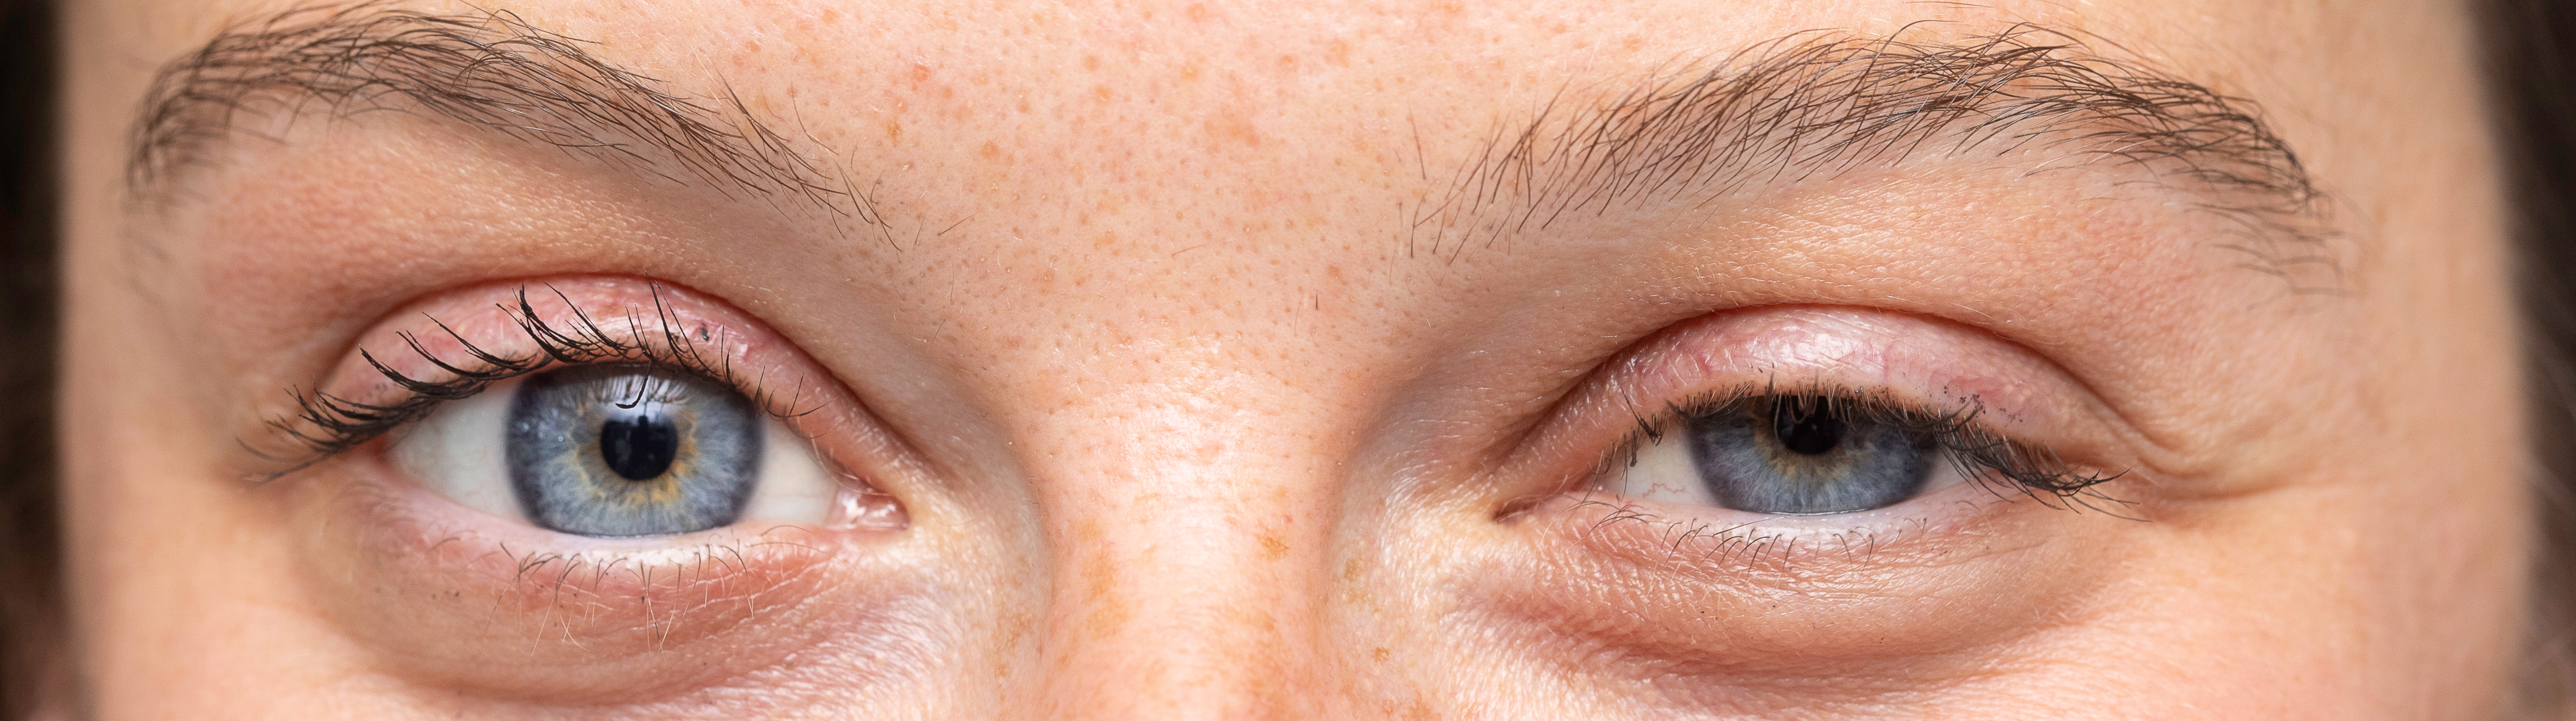 Ausschnitt eines Gesichts einer Frau, die ein geschwollenes Augenlid hat. 